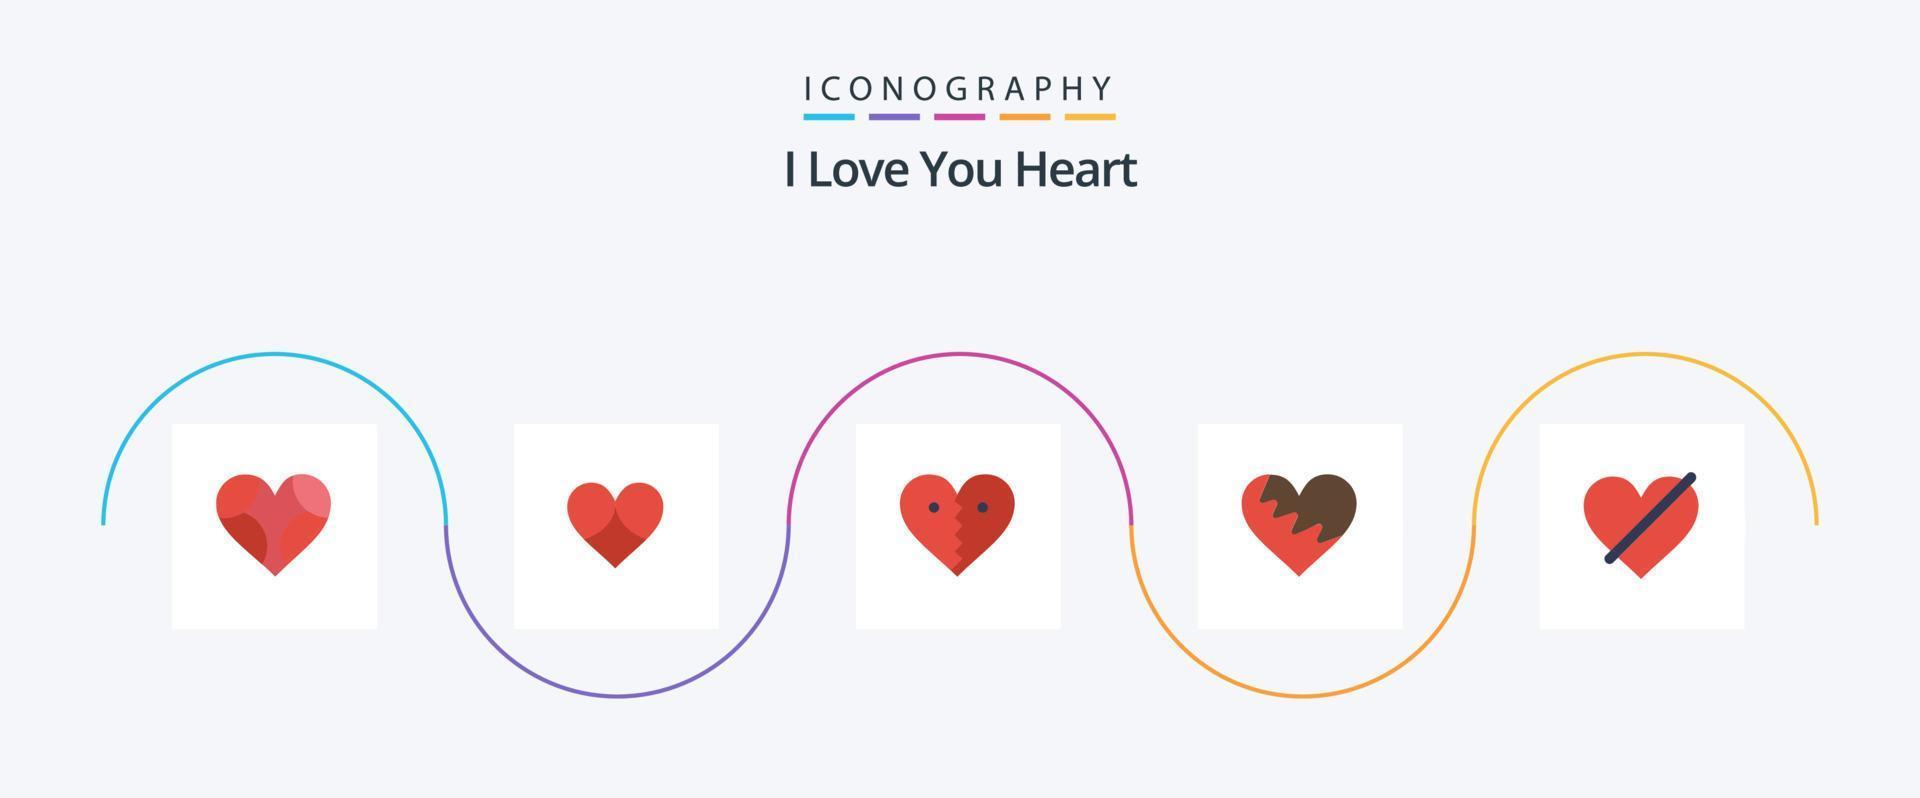 paquete de iconos de corazón plano 5 que incluye amor. roto. amar. romper. amar vector